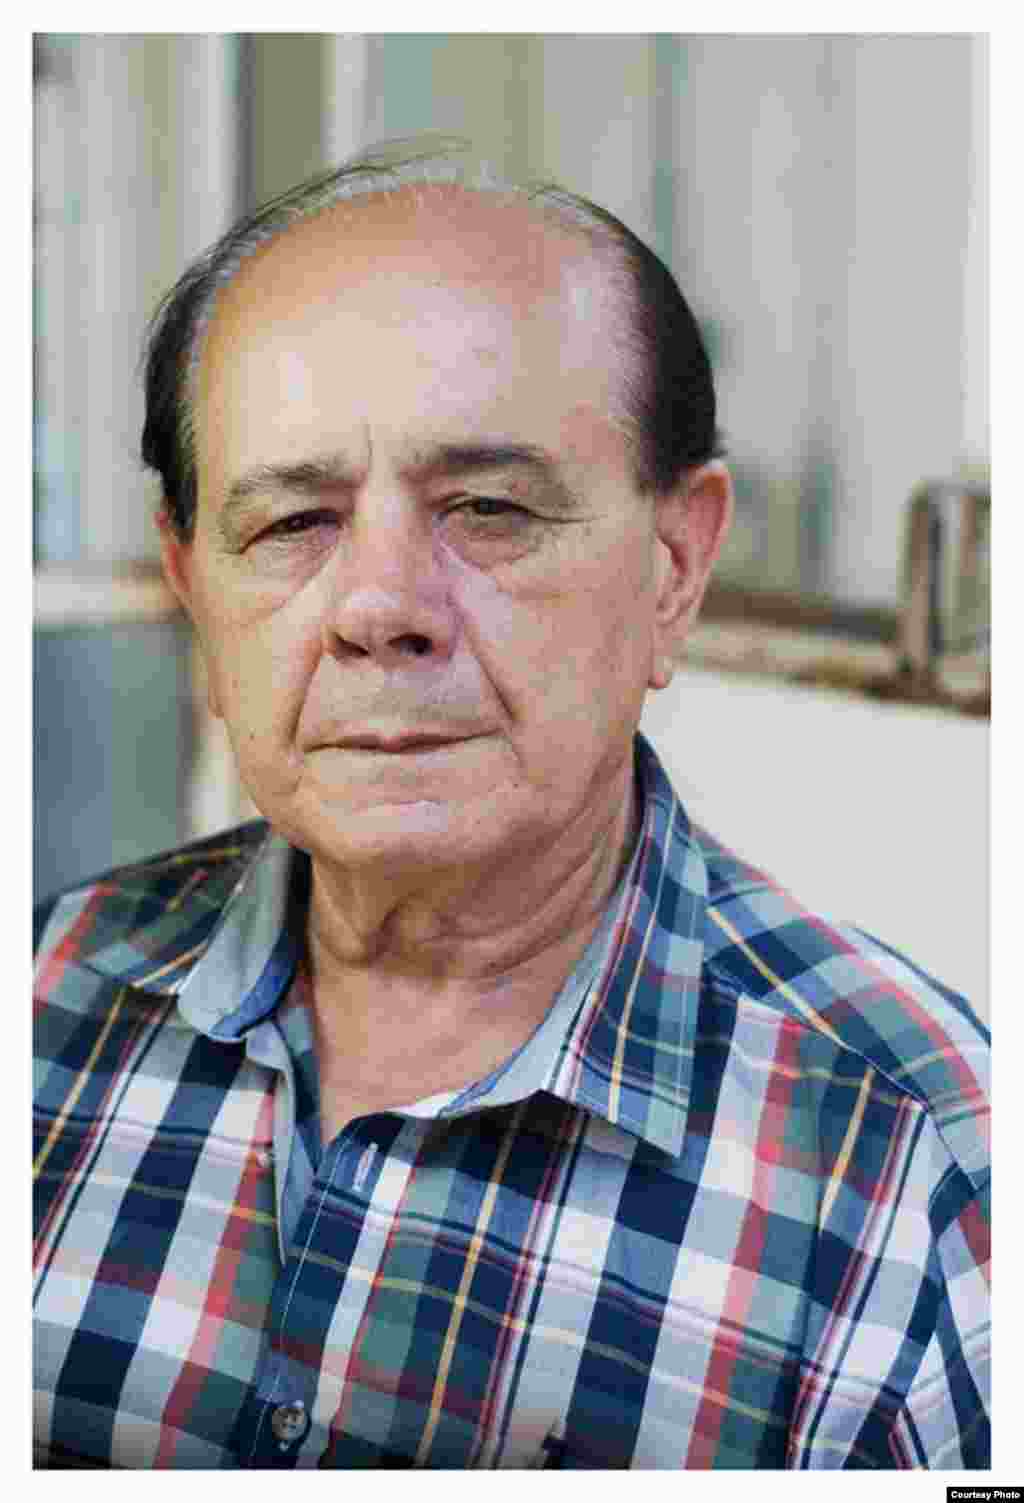 Raúl Borges, padre del preso político cubano Ernesto Borges Pérez. Raél Borges es presidente del Partido Demócrata Cristiano de Cuba. Foto Cortesía de Claudio Fuentes.